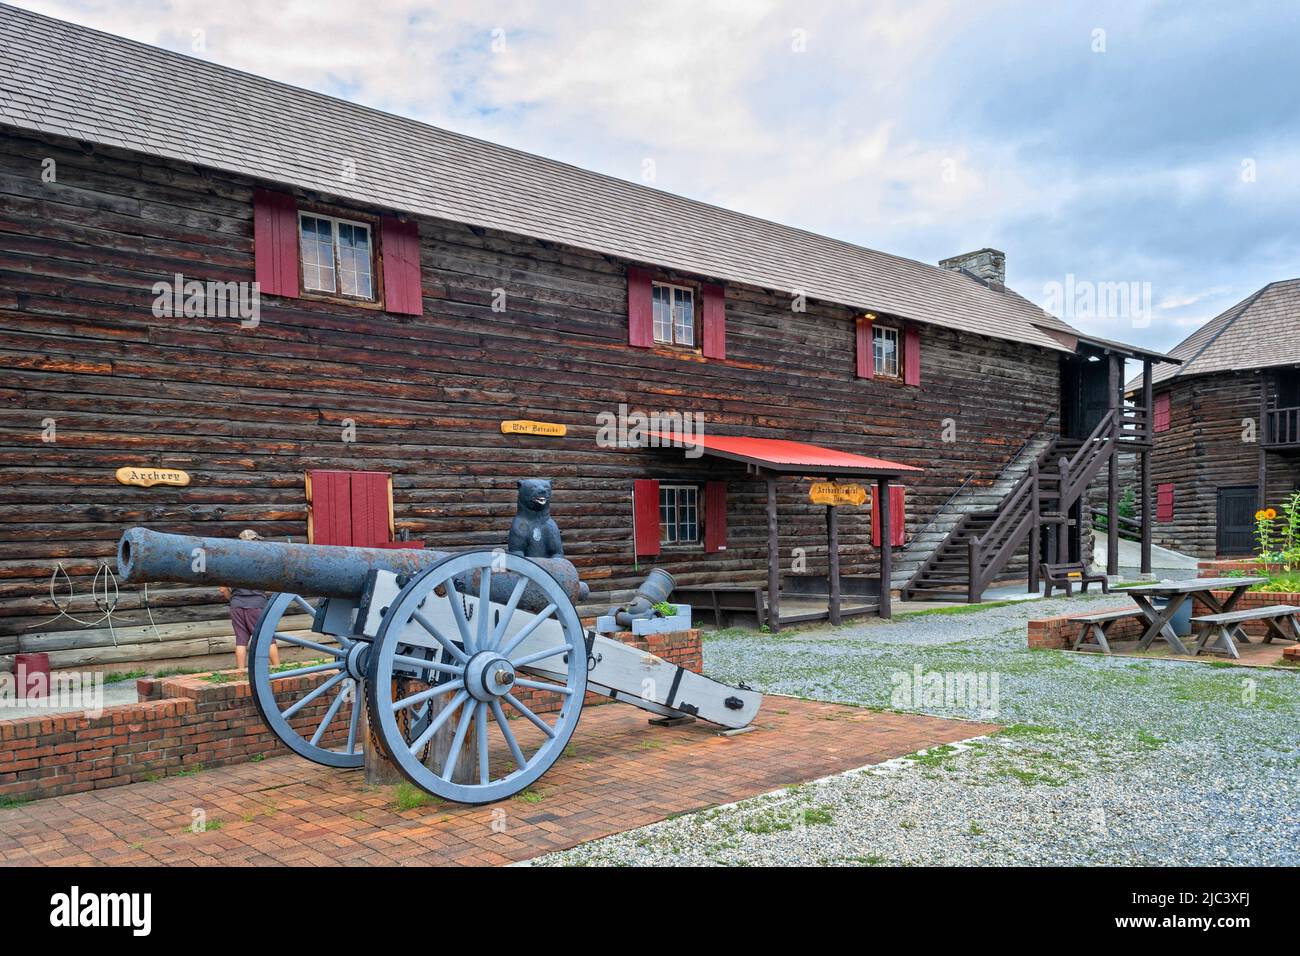 Fort William Henry à Lake George, New York. Il est maintenant exploité comme un musée vivant et une attraction touristique populaire. Banque D'Images